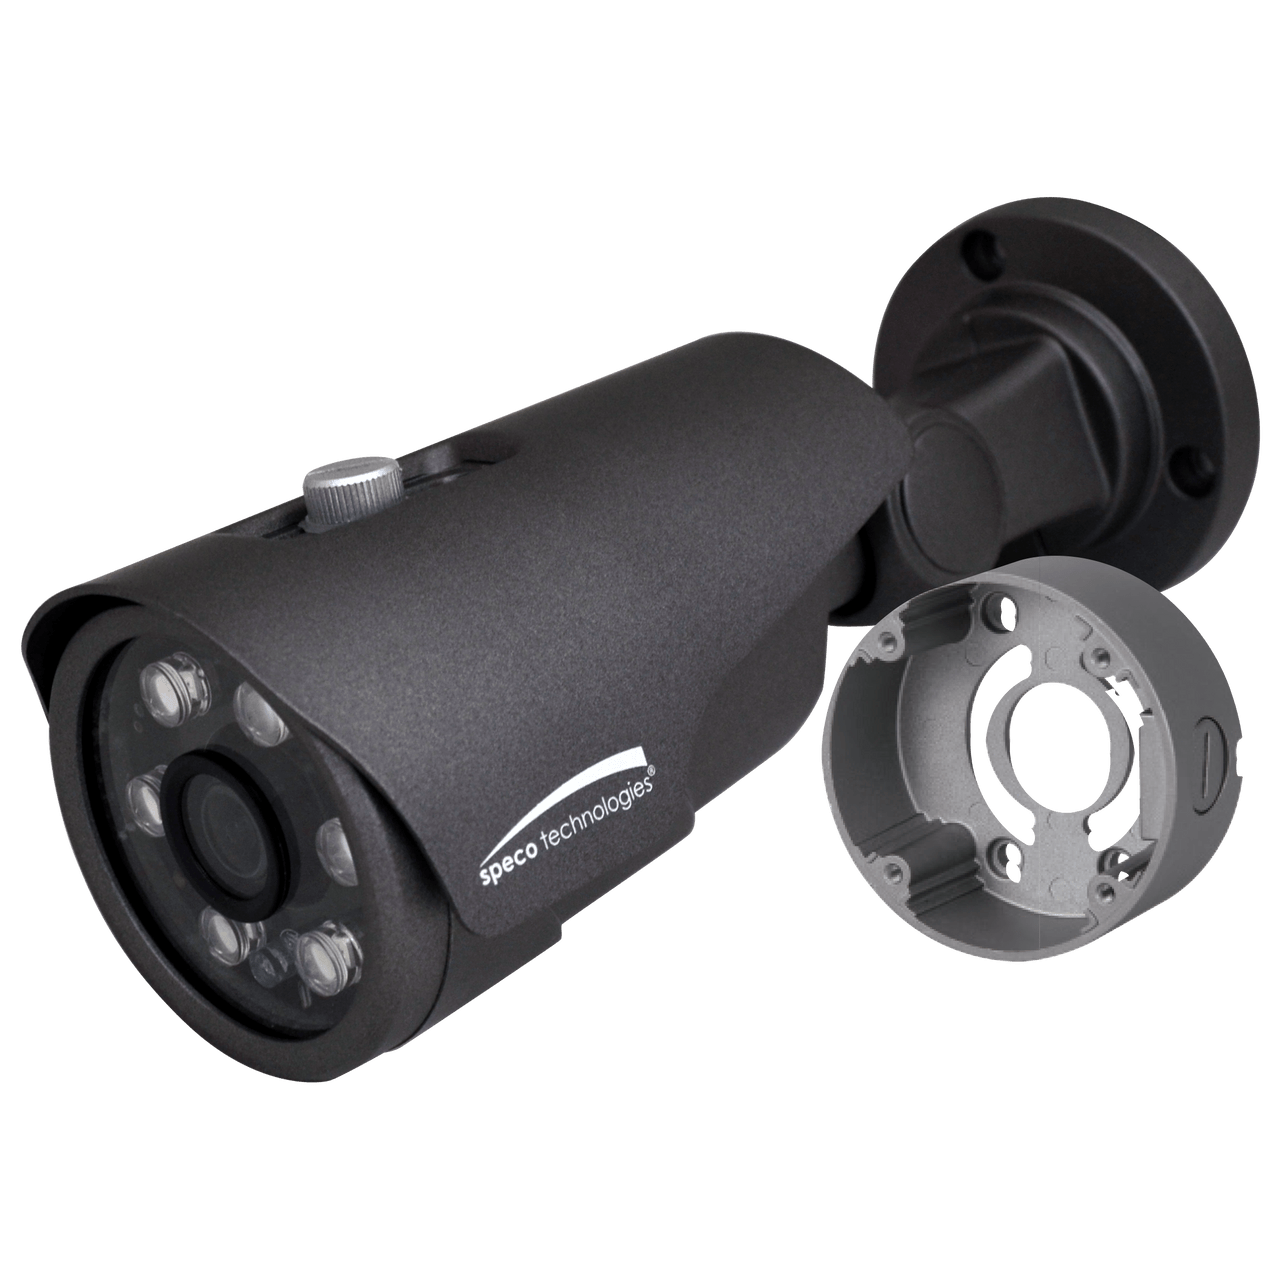 Speco Technologies VLT4BG 4MP HD-TVI Bullet Camera, IR, 2.8mm lens, Grey housing, Included Junc Box (VLT4BG)